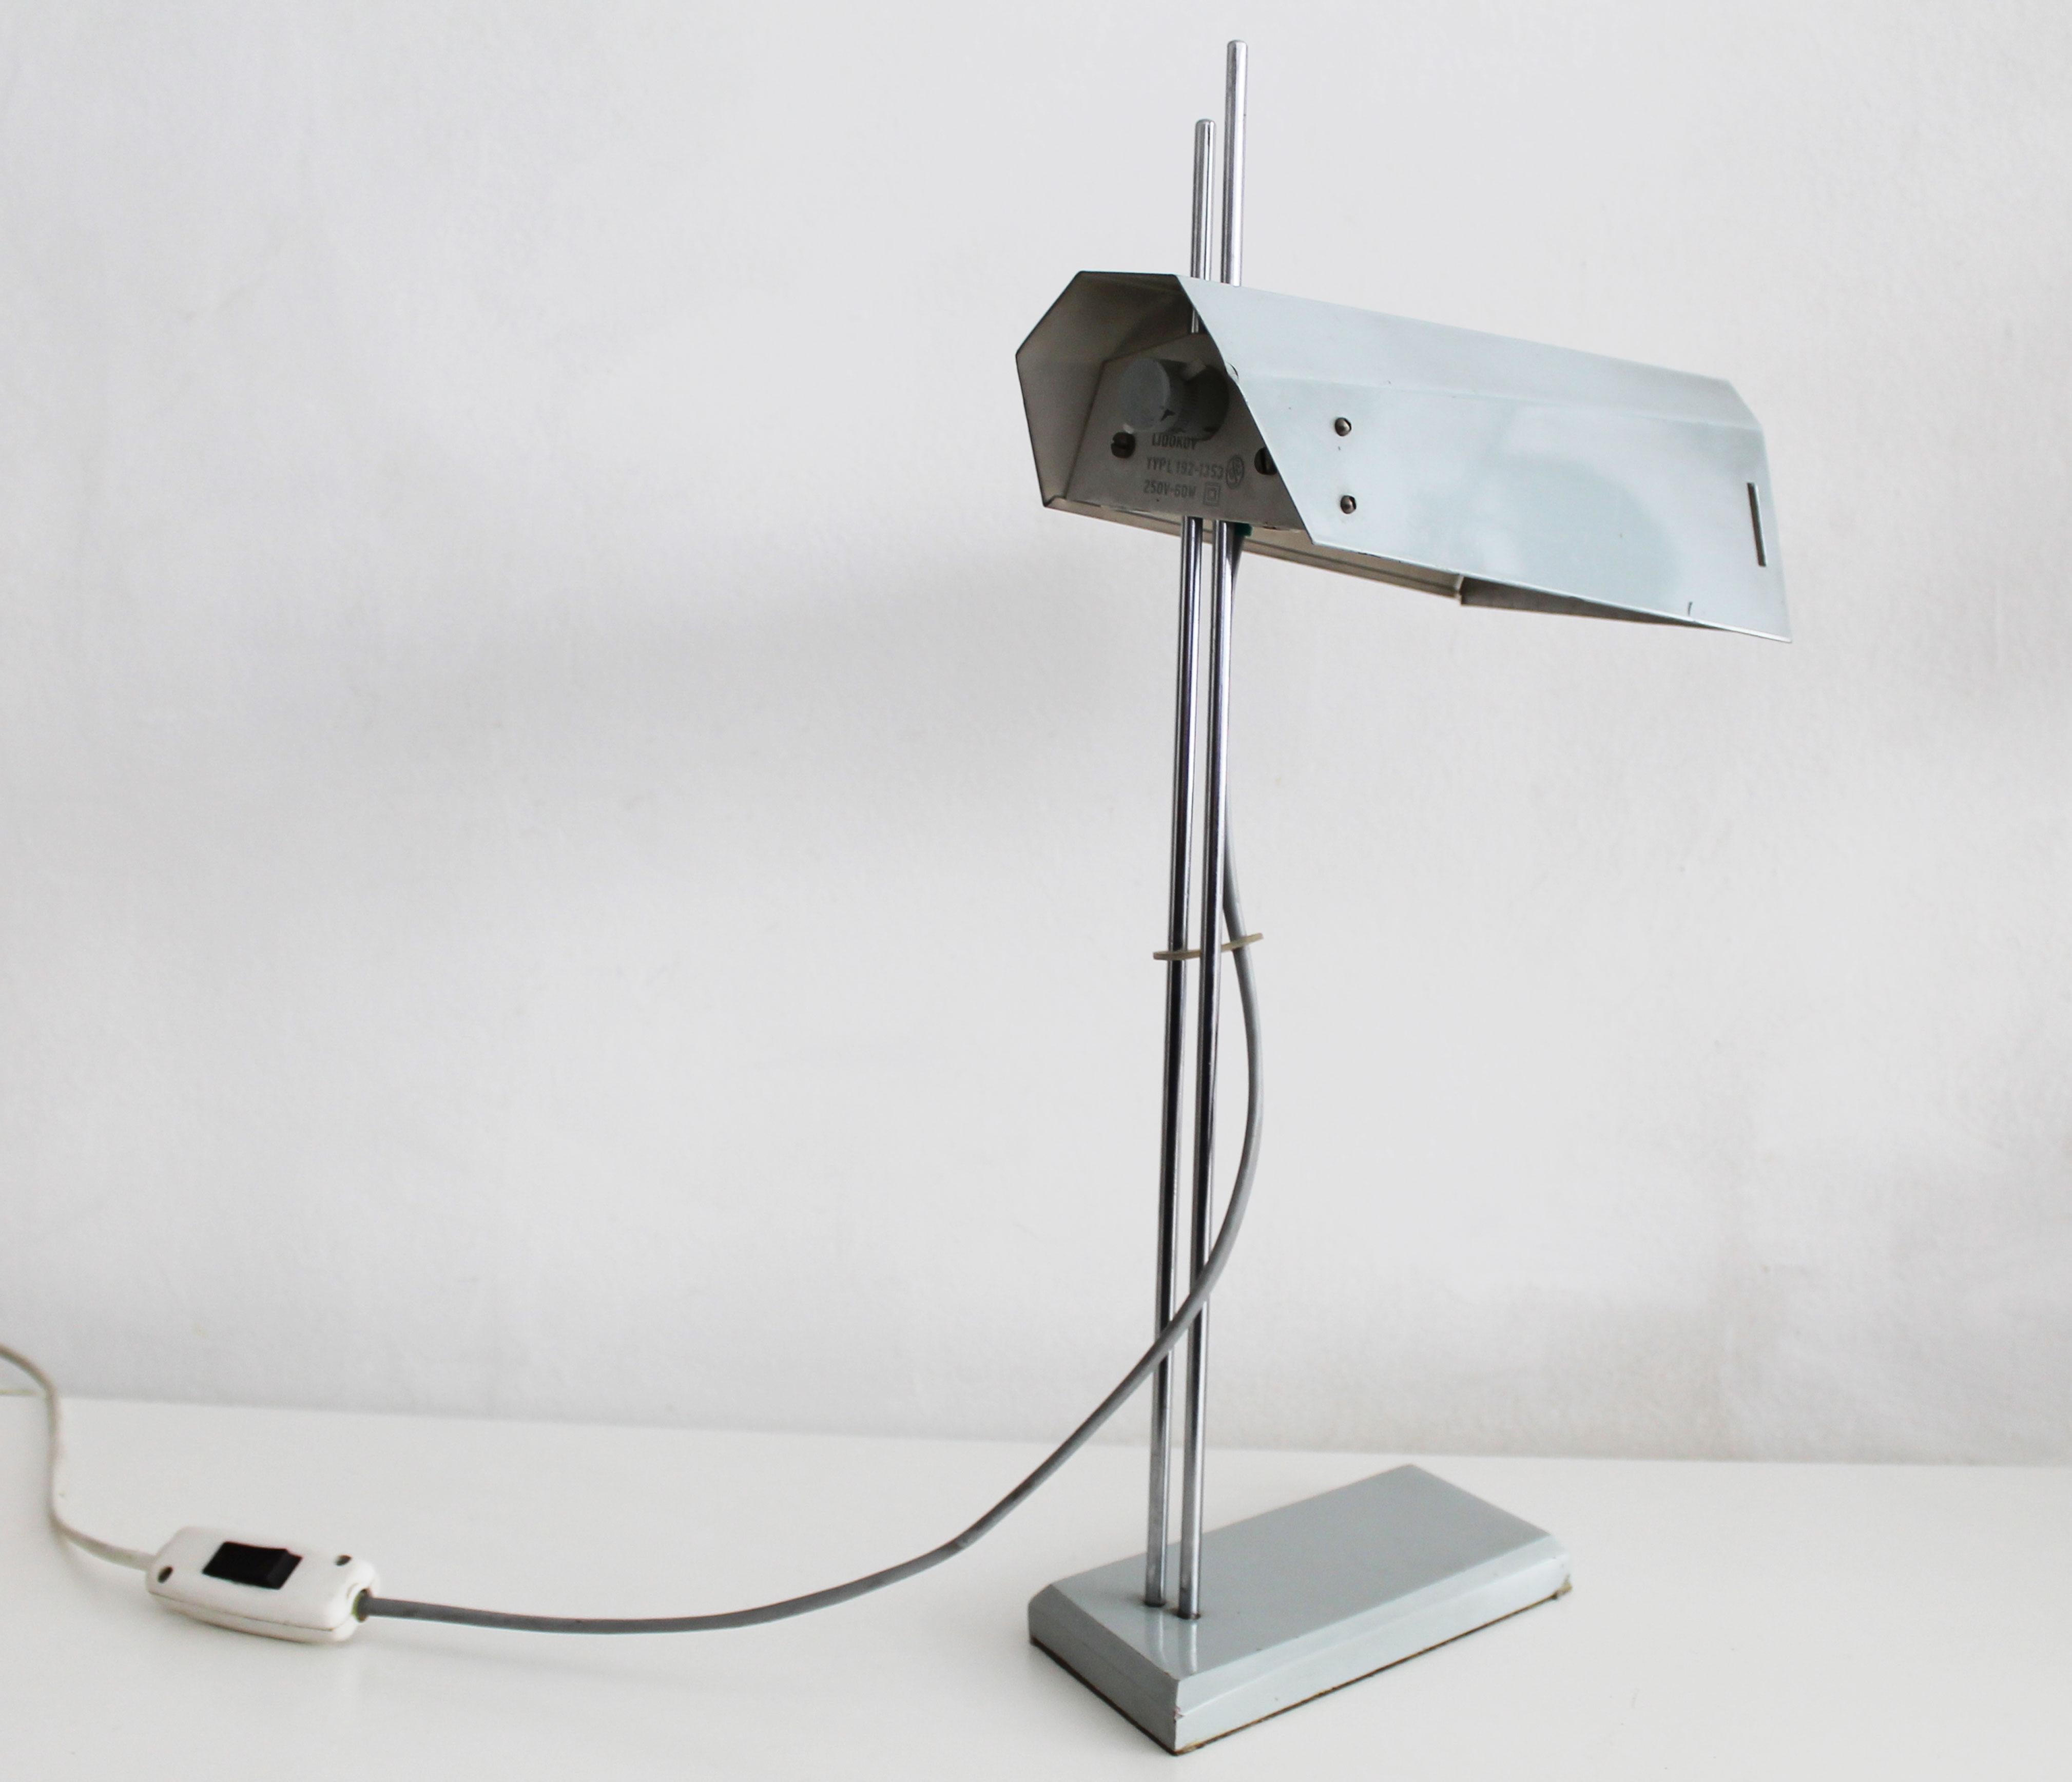 Diese Schreibtischlampe wurde in den späten 1970er Jahren entworfen und von Lidokov in der ehemaligen Tschechoslowakei hergestellt.

Der Lampenschirm wird von zwei Stahlstäben gehalten. Dadurch kann der Benutzer den Lampenschirm in verschiedene